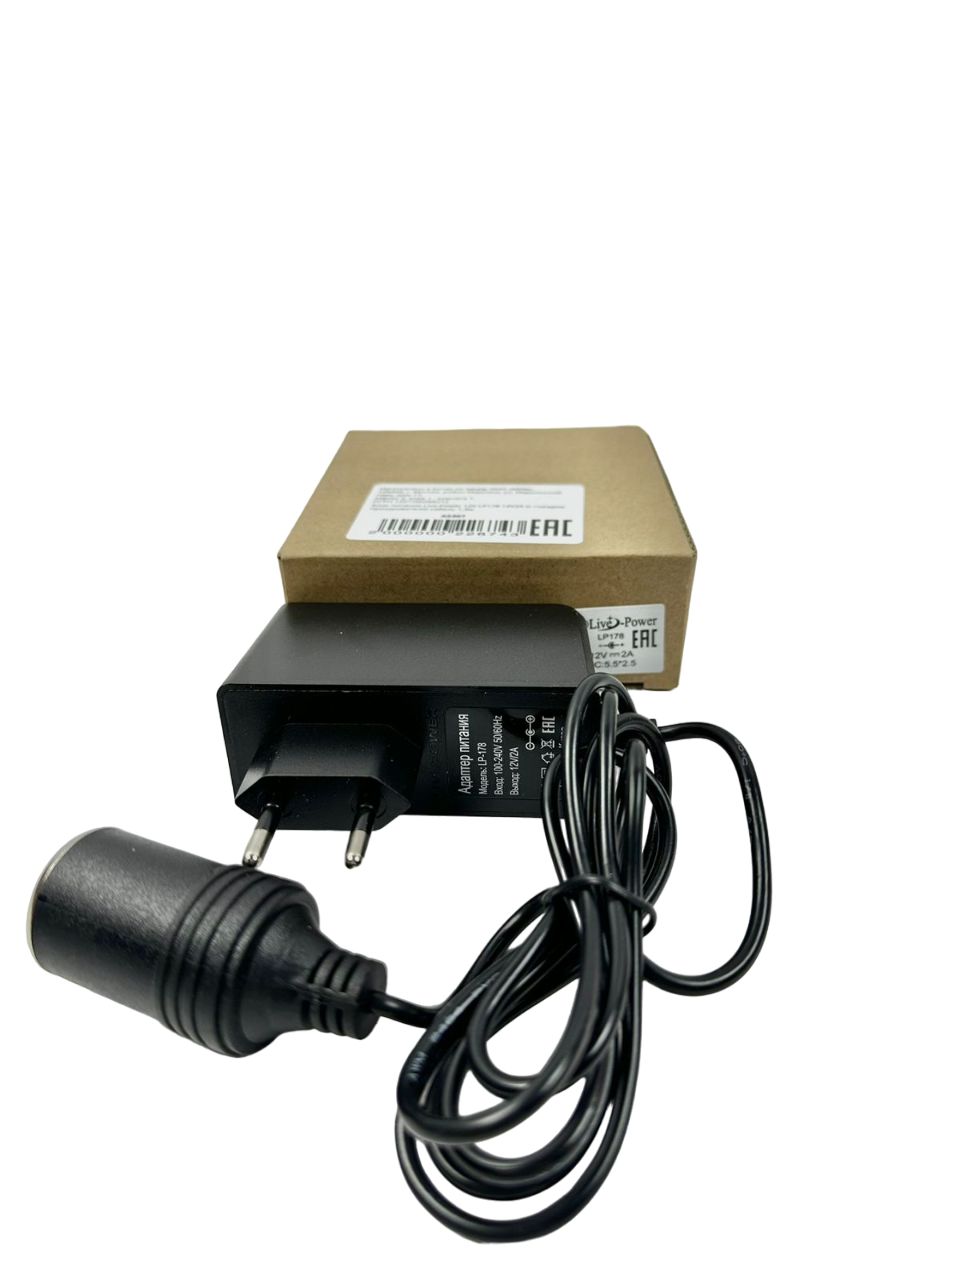 Блок питания Live-Power LP-178, 12 В/2 А, с гнездом прикуривателя, кабель 1.3 м